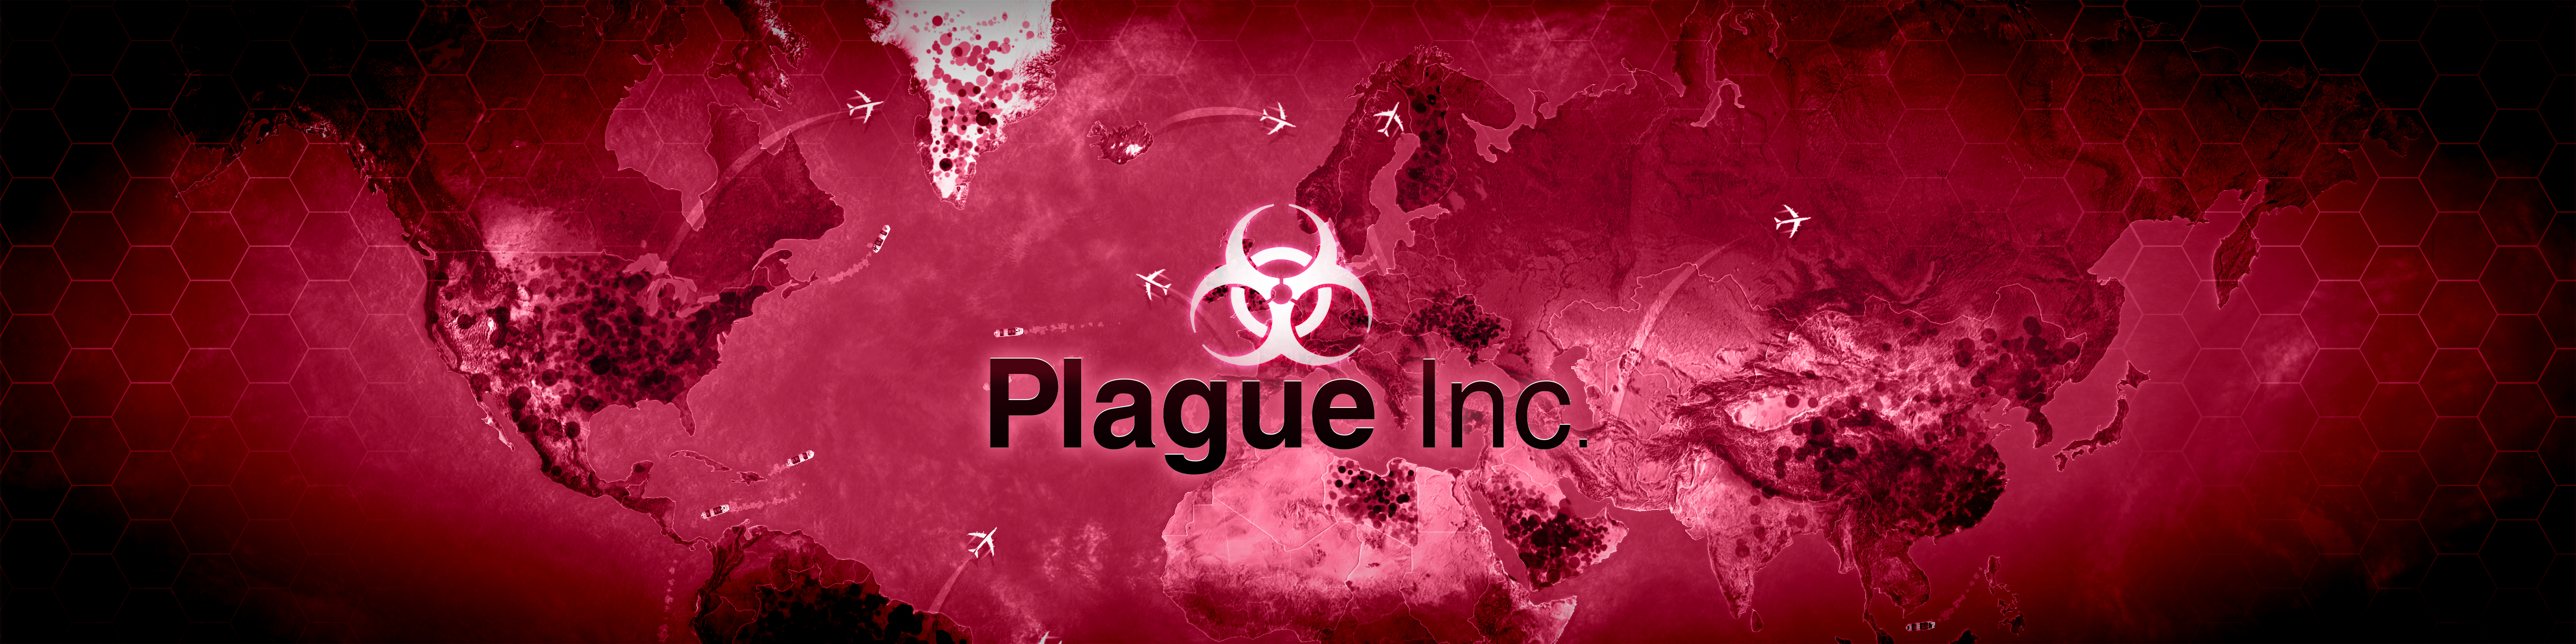 Plague inc steam фото 35